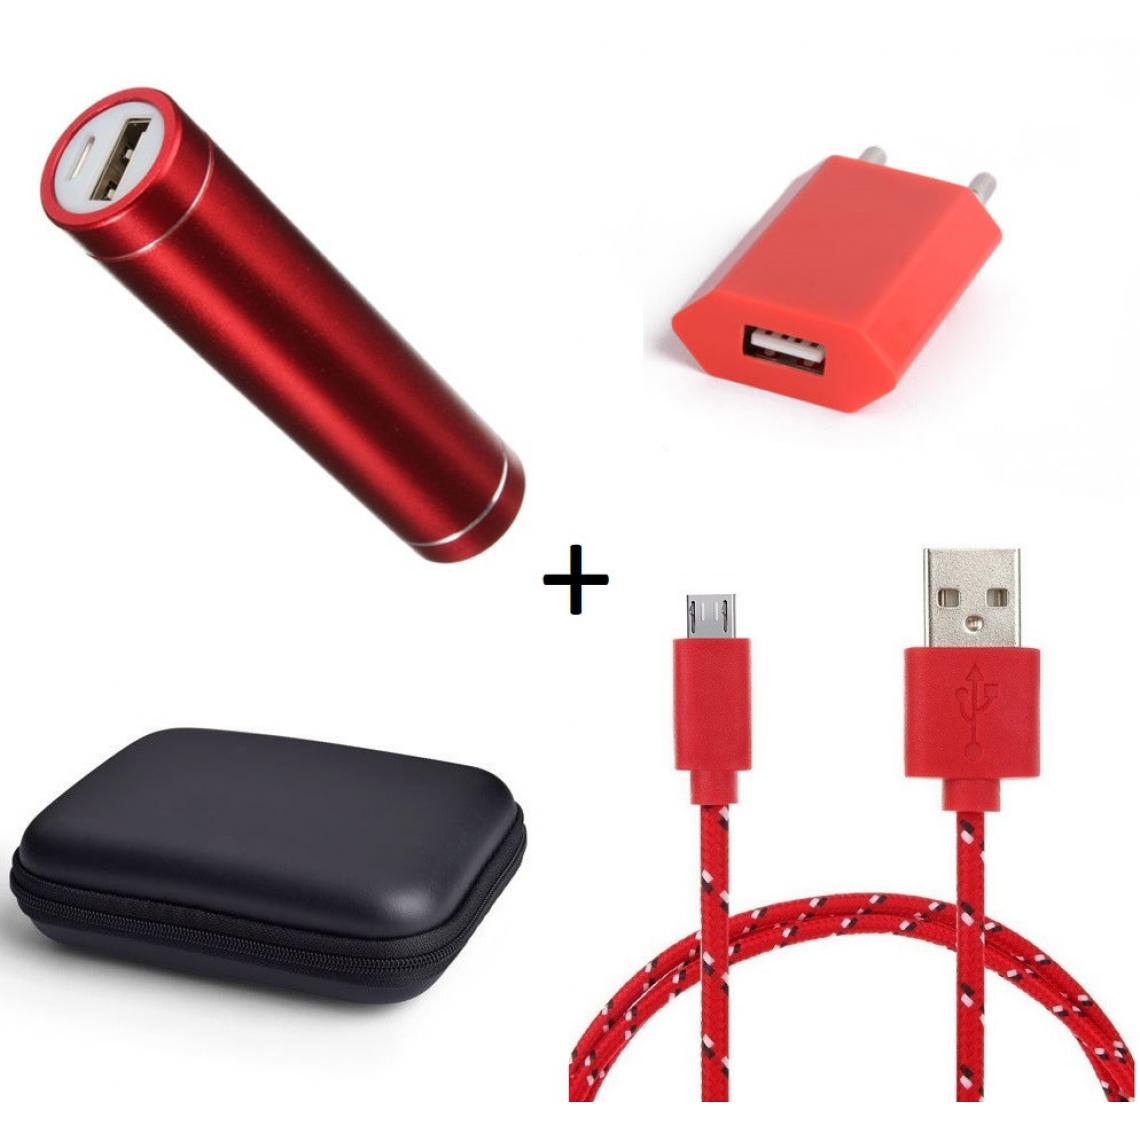 Shot - Pack pour GIONEE F9 (Cable Chargeur Micro USB Tresse 3m + Pochette + Batterie + Prise Secteur) Android (ROUGE) - Chargeur secteur téléphone